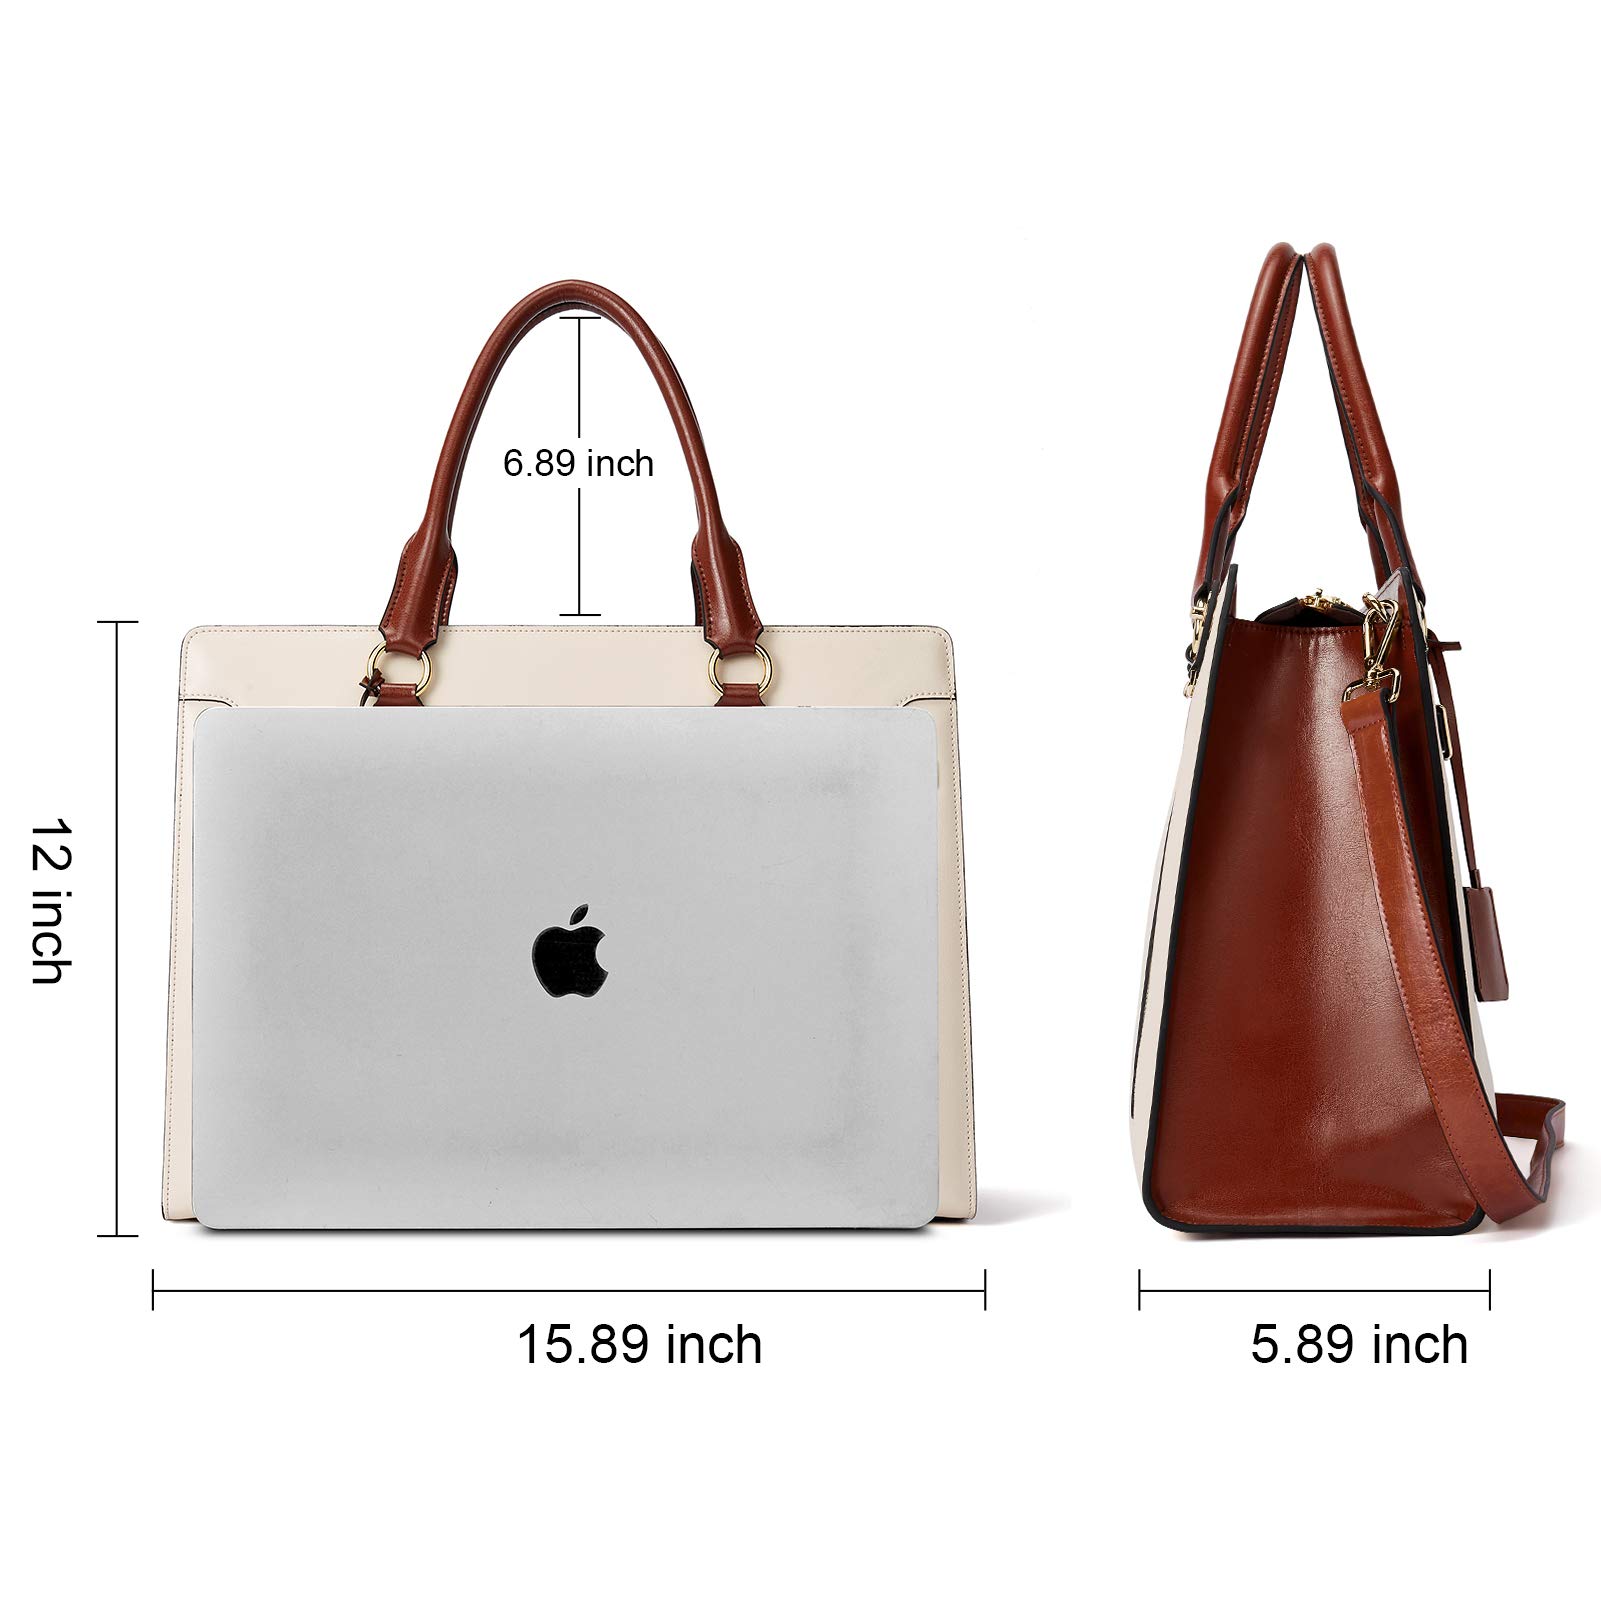 BOSTANTEN Briefcase for Women Leather Laptop Handbag & Genuine Leather Wallets for Women RFID Blocking Slim Bofild Purse Beige Brown